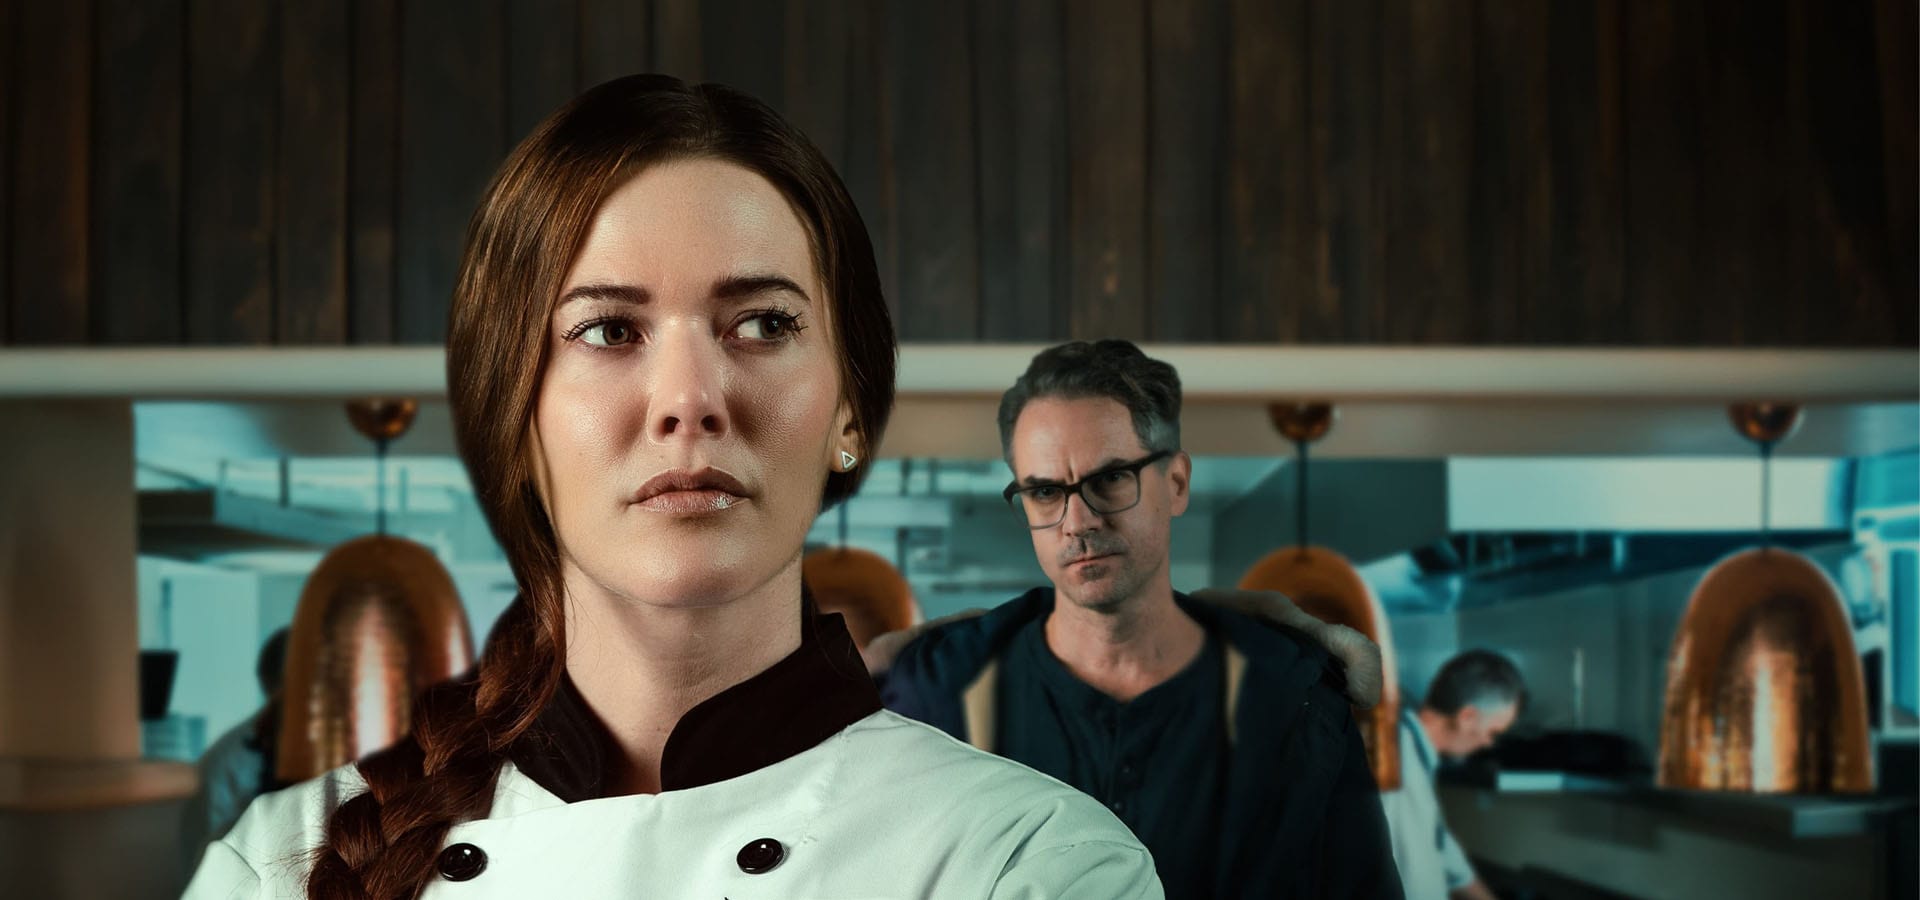 دانلود فیلم A Chef’s Deadly Revenge 2024 انتقام مرگبار یک سرآشپز